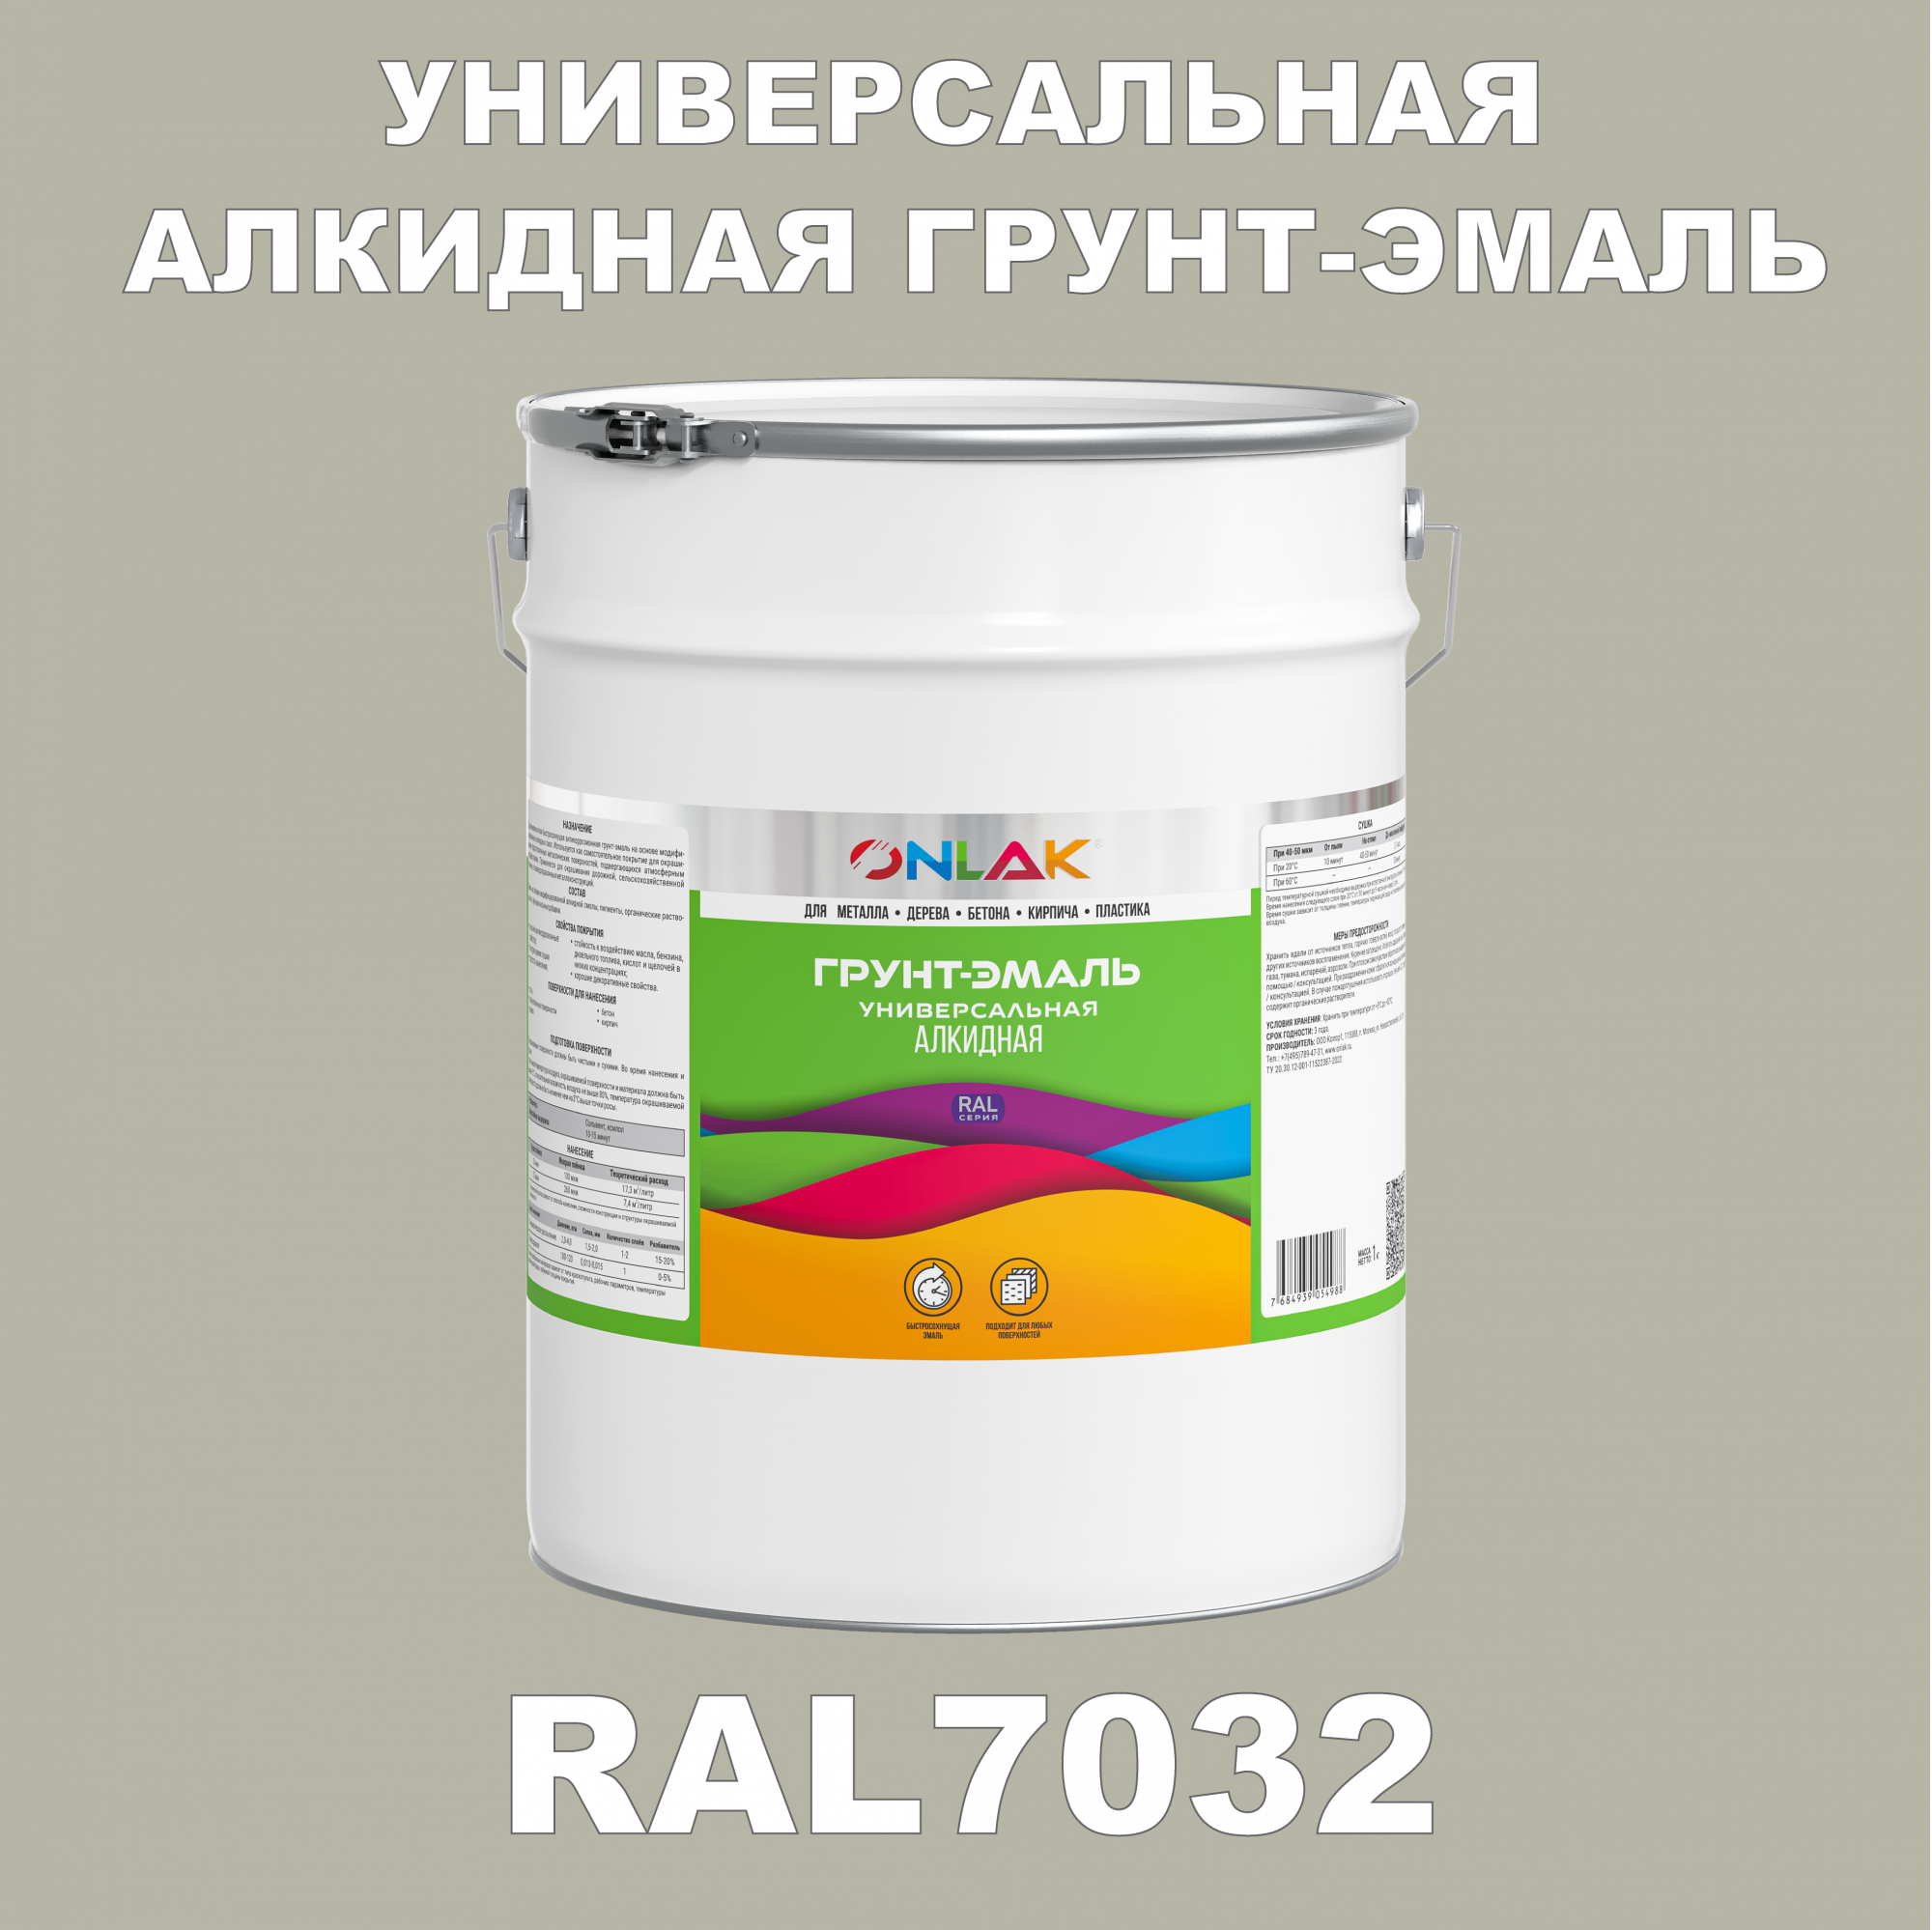 Грунт-эмаль ONLAK 1К RAL7032 антикоррозионная алкидная по металлу по ржавчине 20 кг грунт эмаль аэрозольная престиж 3в1 алкидная коричневая ral 8017 425 мл 0 425 кг